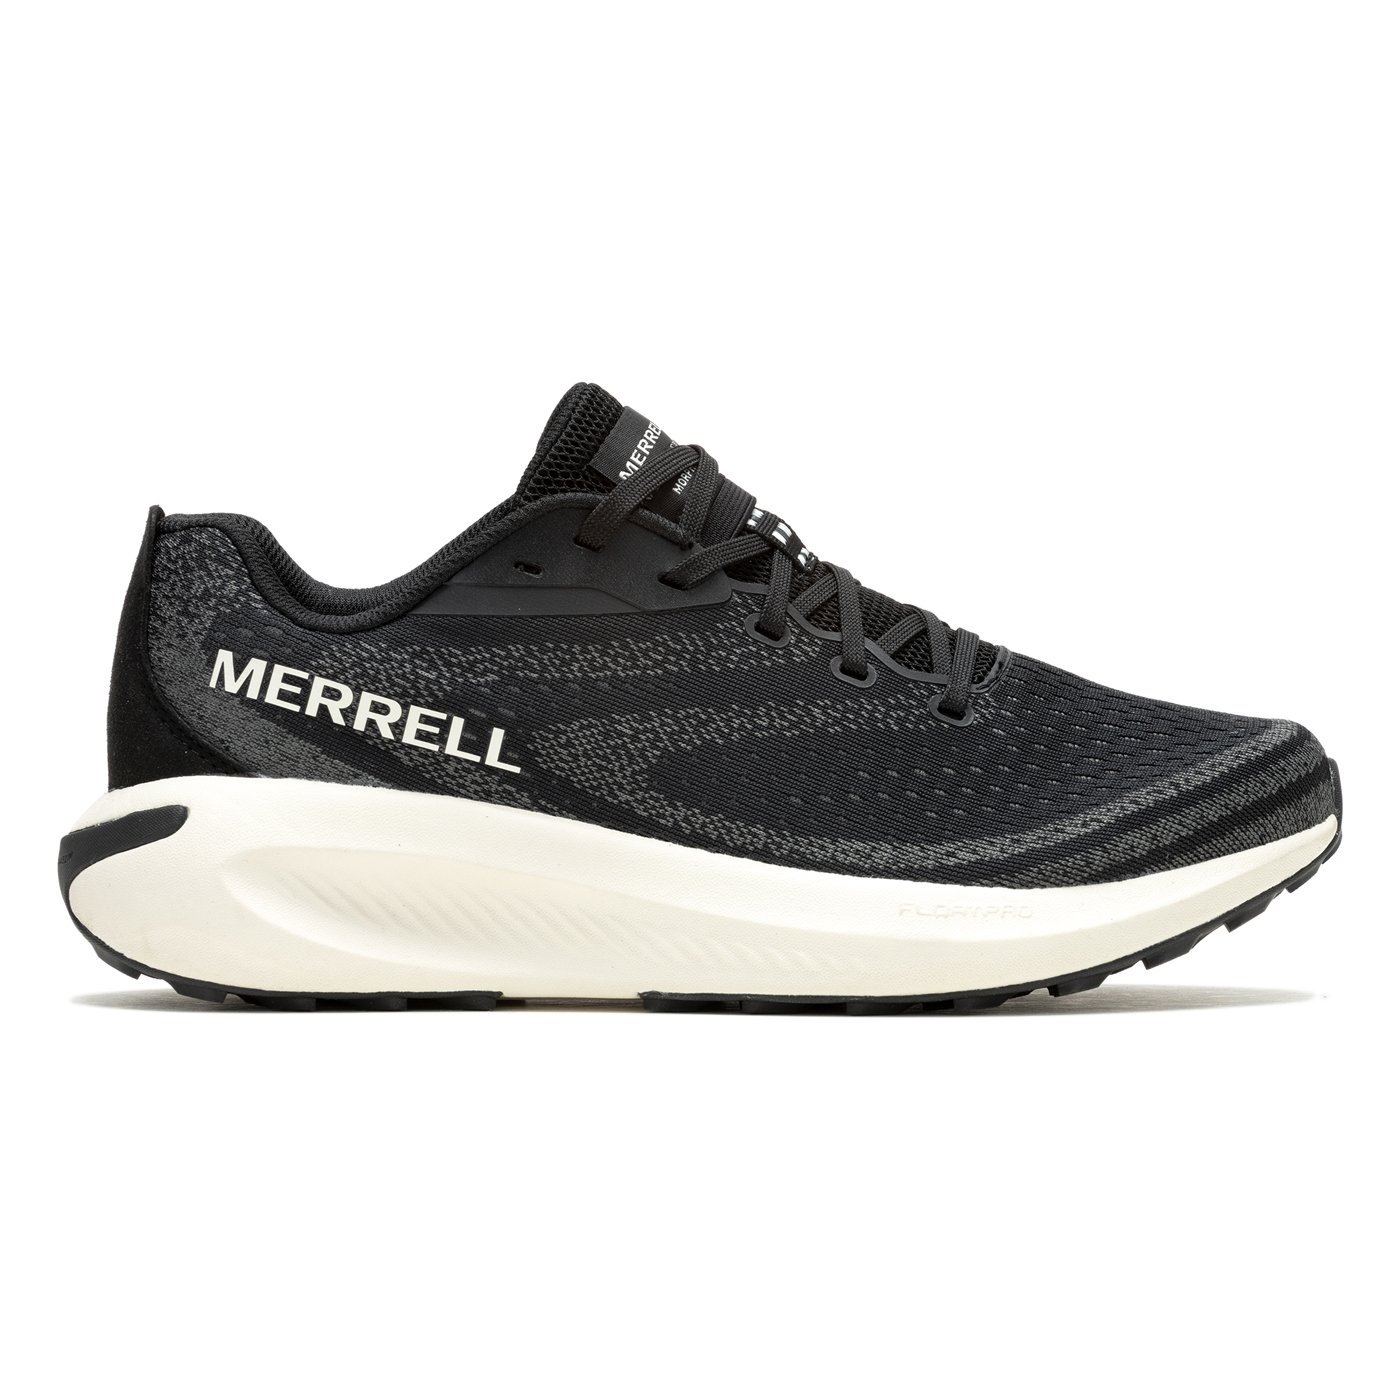 Merrell Morpholite Erkek Patika Koşu Ayakkabısı - Siyah - 1